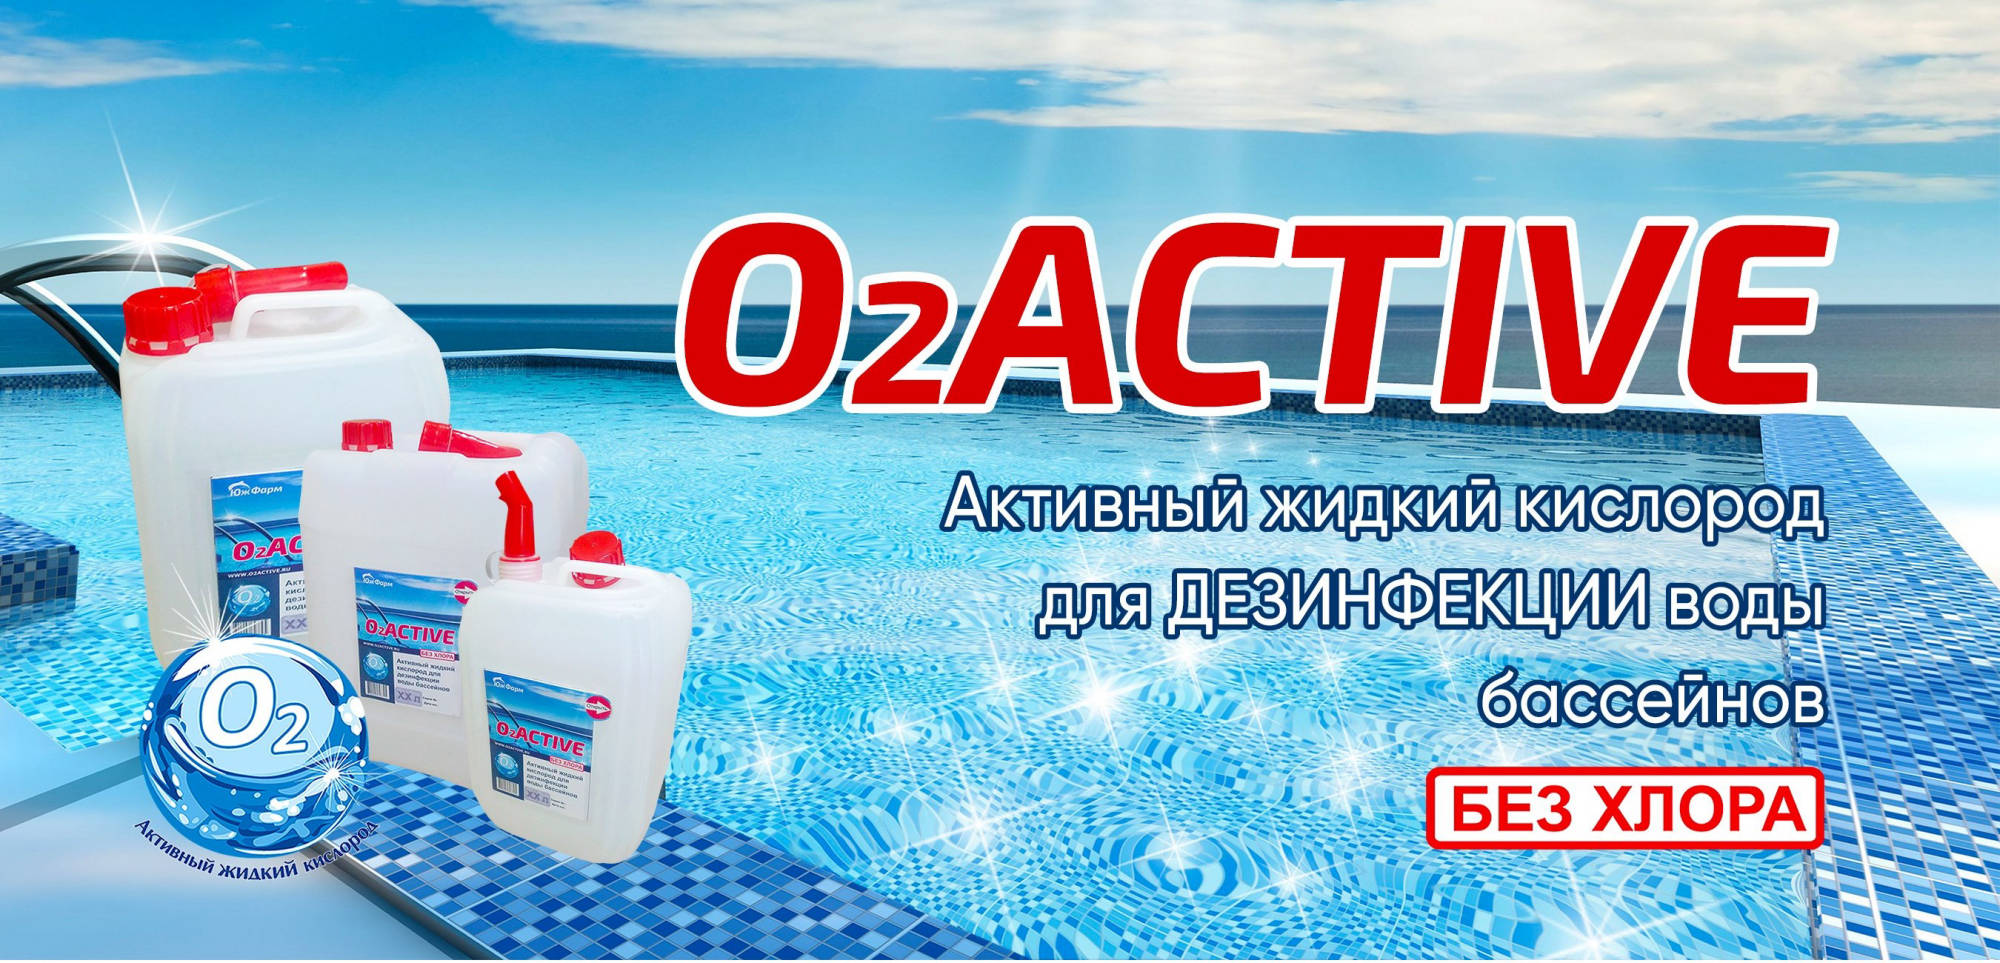 O2Active - активный жидкий кислород для дезинфекции воды бассейнов